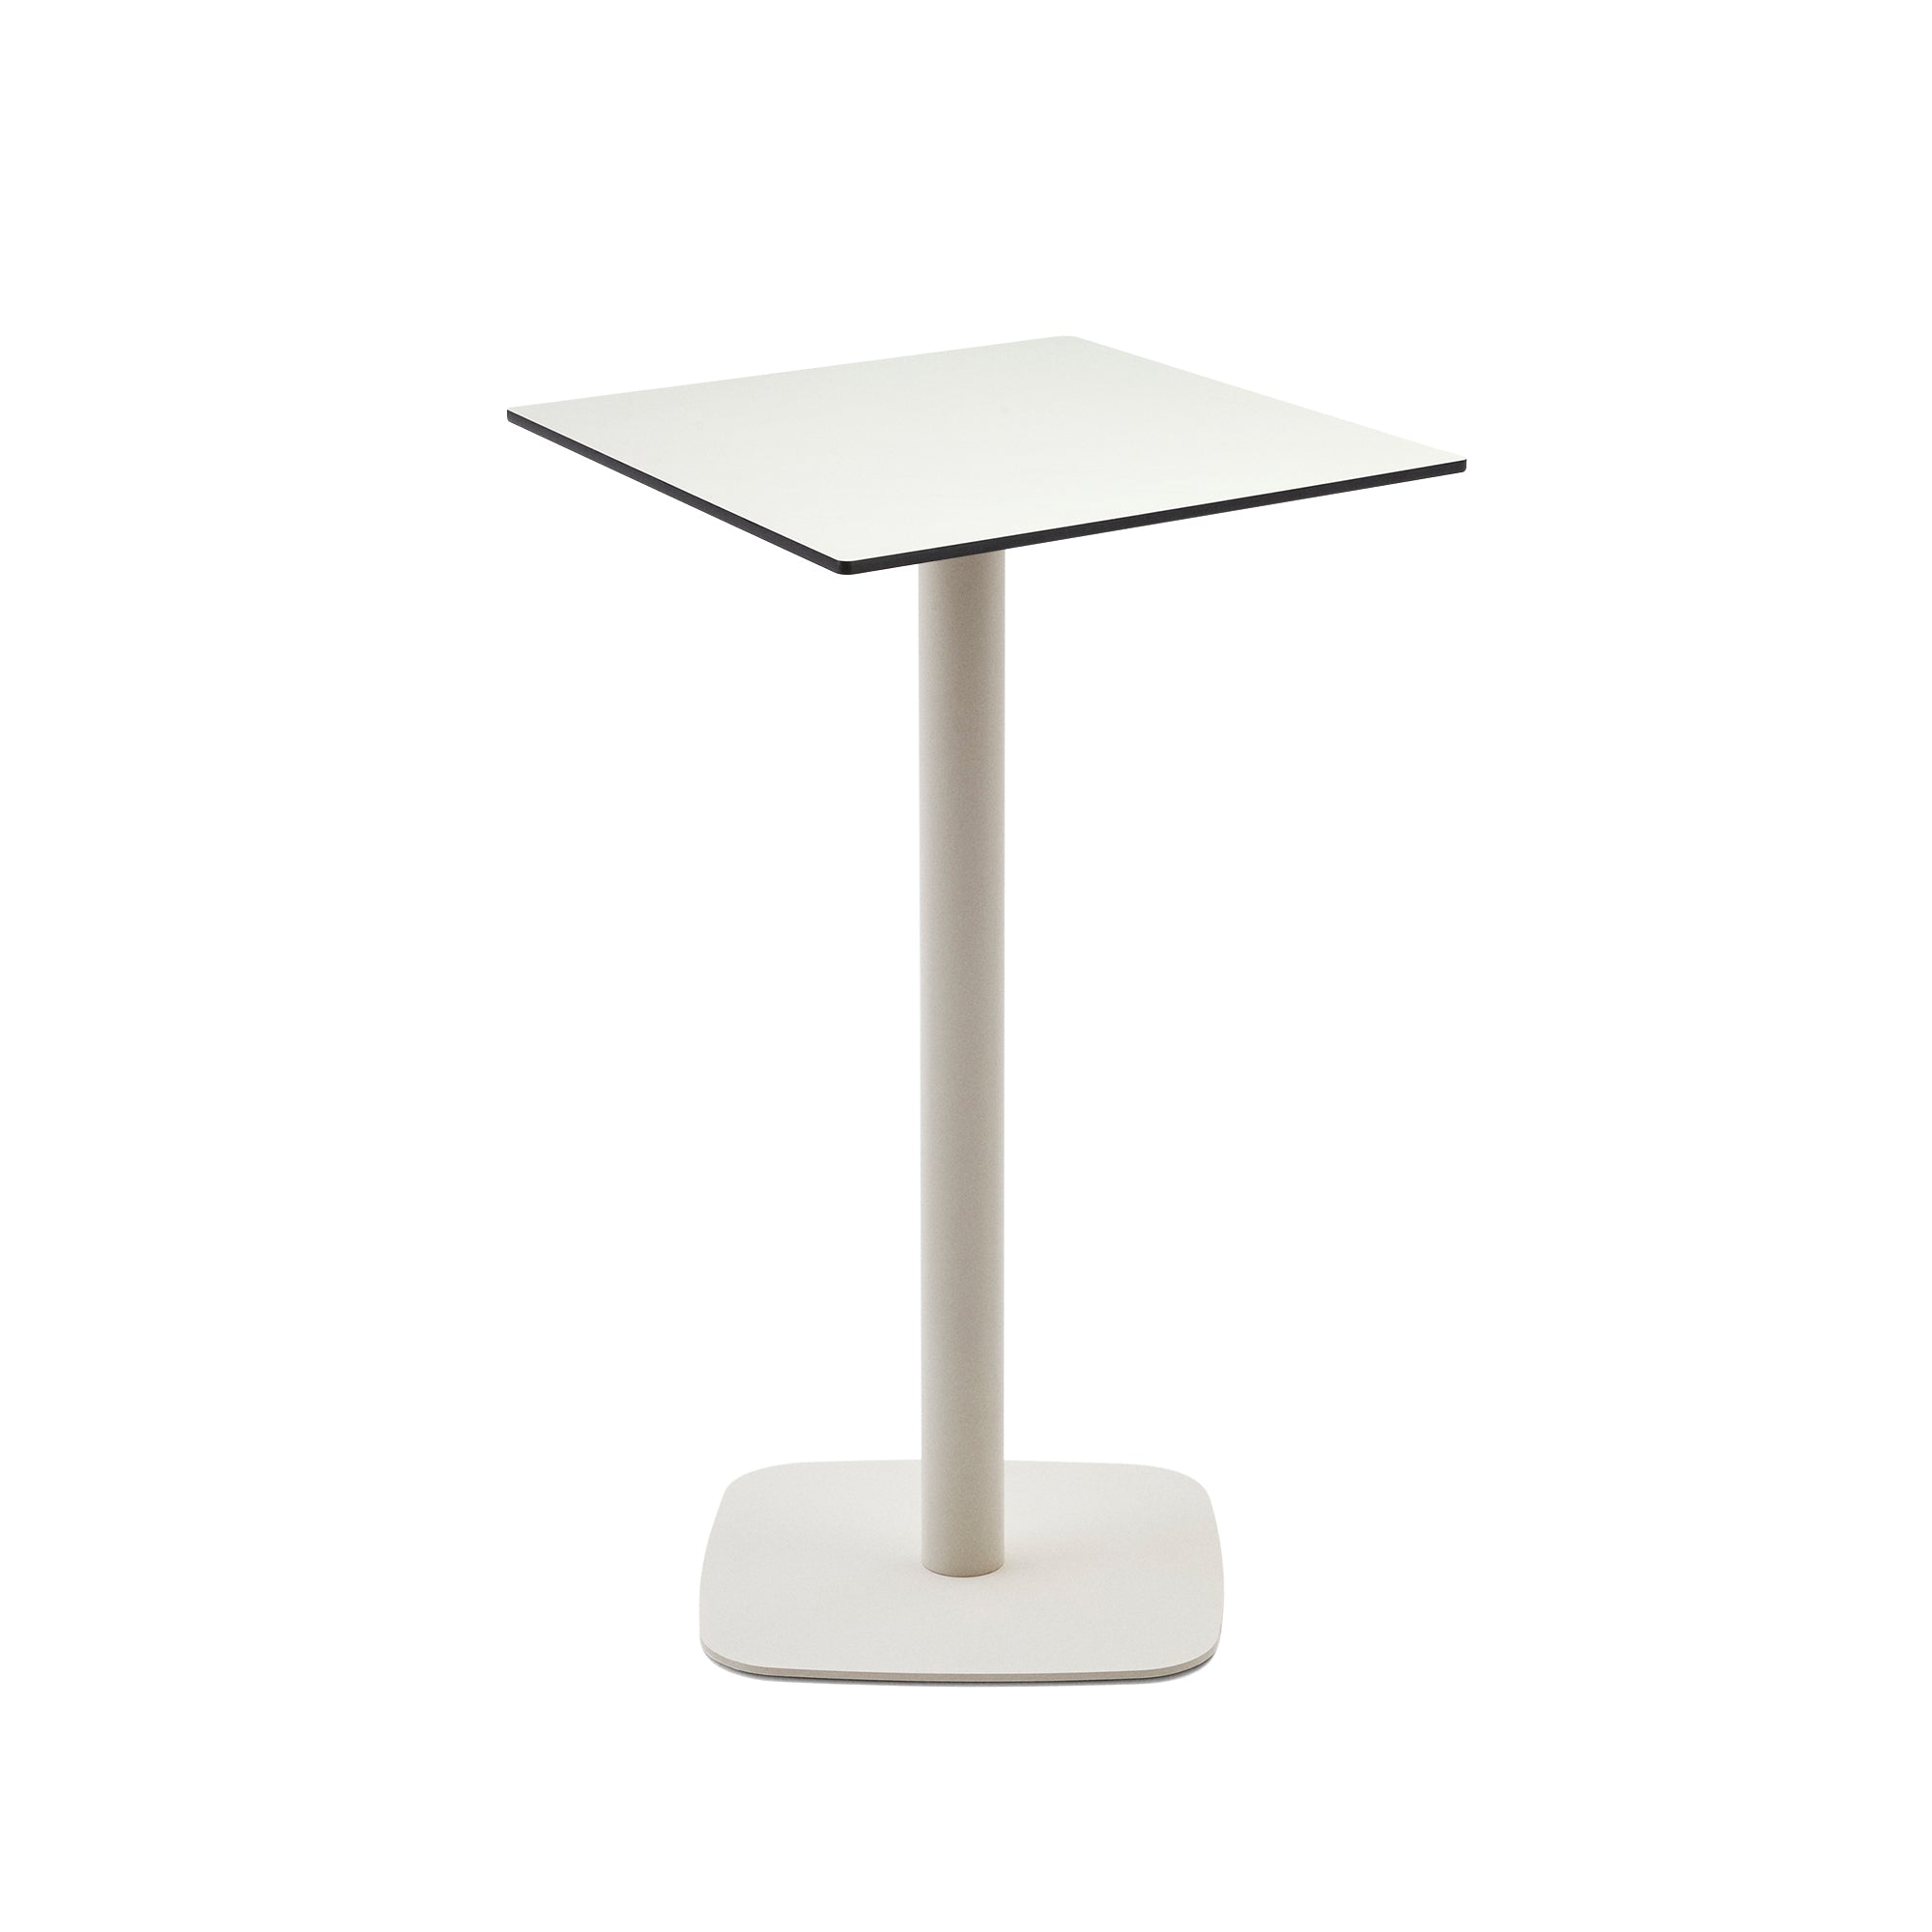 Dina magas kültéri asztal fehér színben, fehérre festett fémlábbal, 60x60x96 cm, fehér színben.